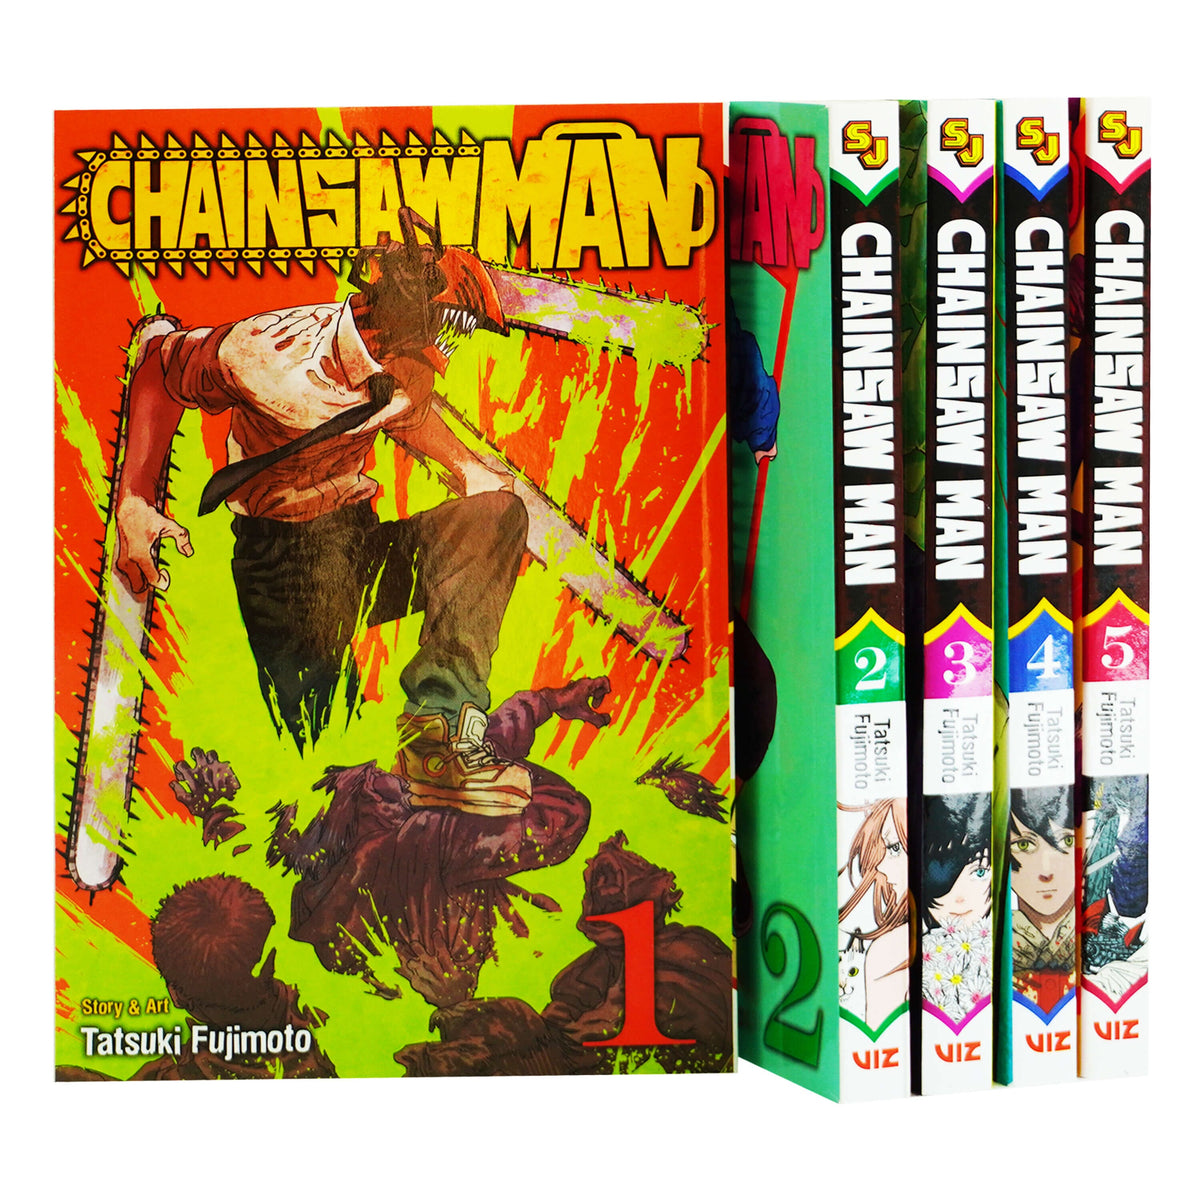 Chainsaw Man by Tatsuki Fujimoto: Vol. 1-5 Collection Set - Manga